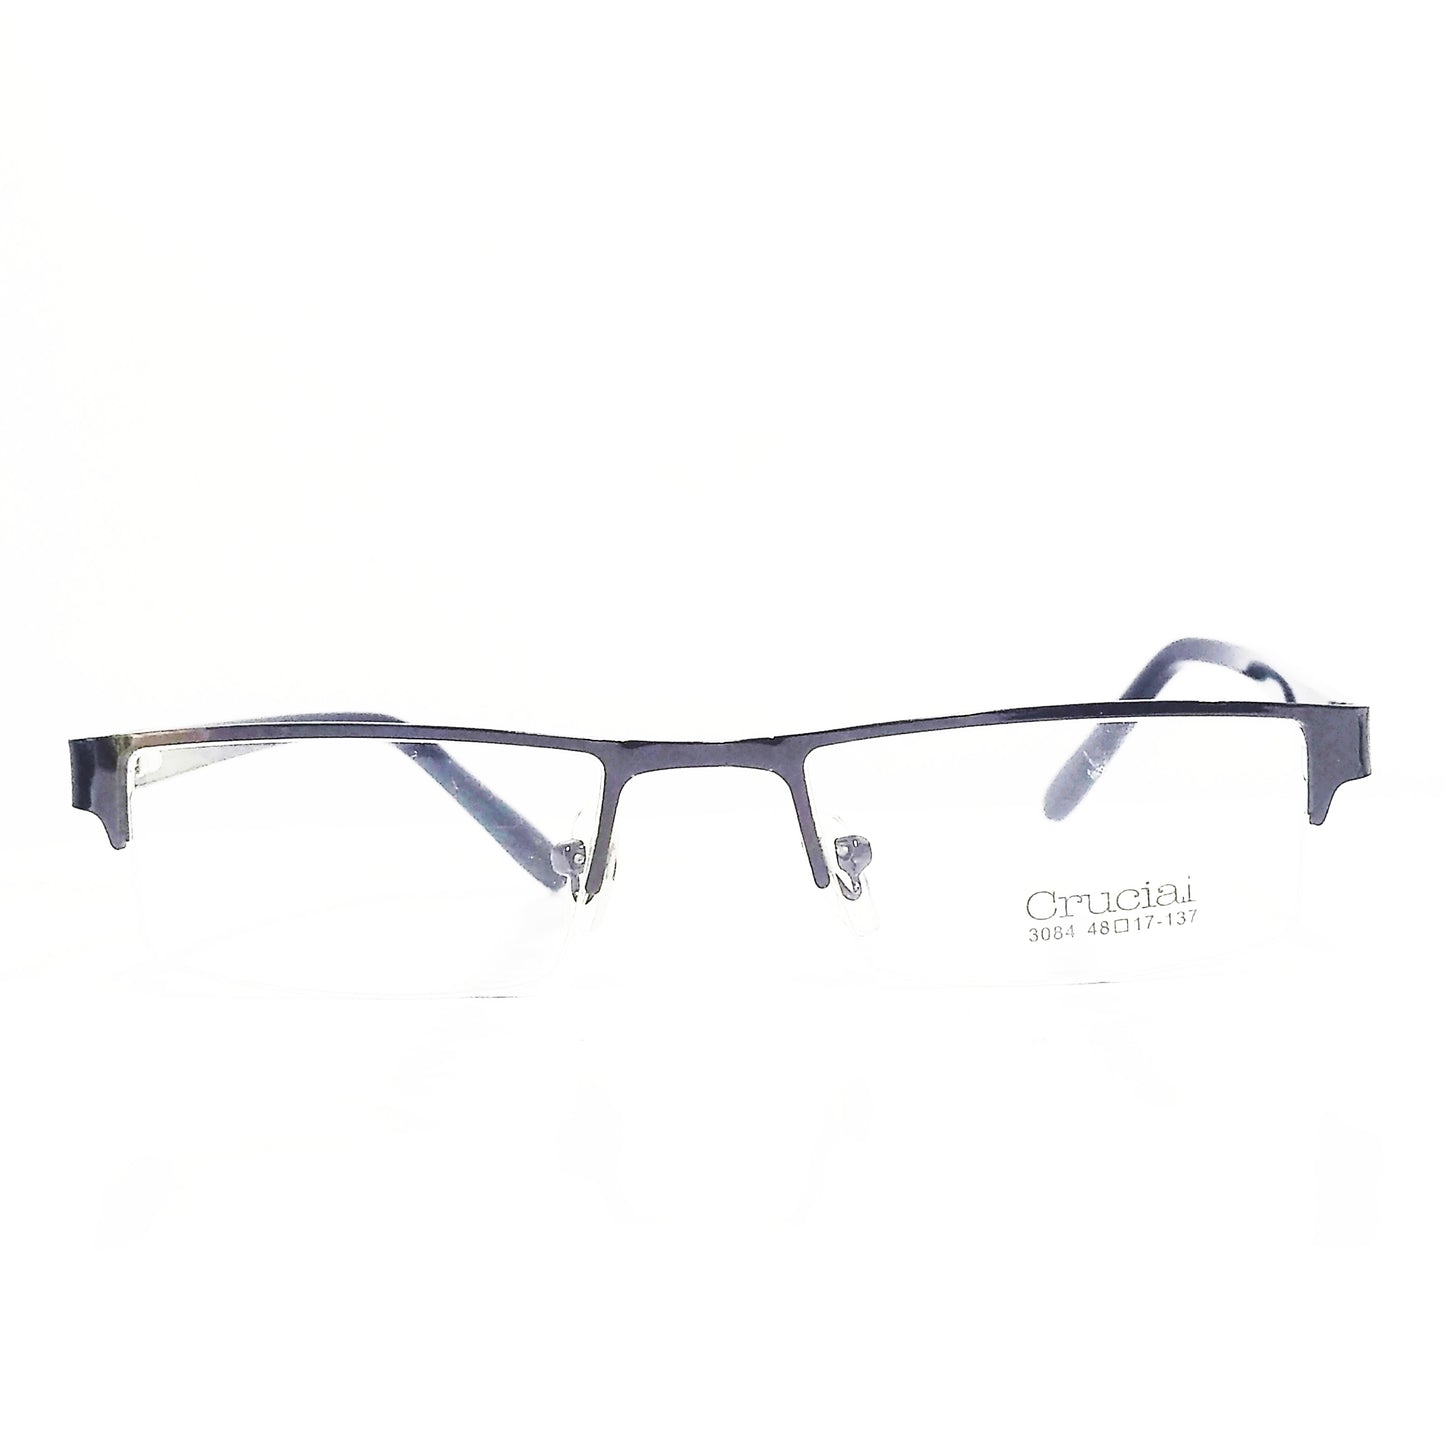 Grey Metal Supra Half Rim Spectacle Frame Glasses For Women and Men